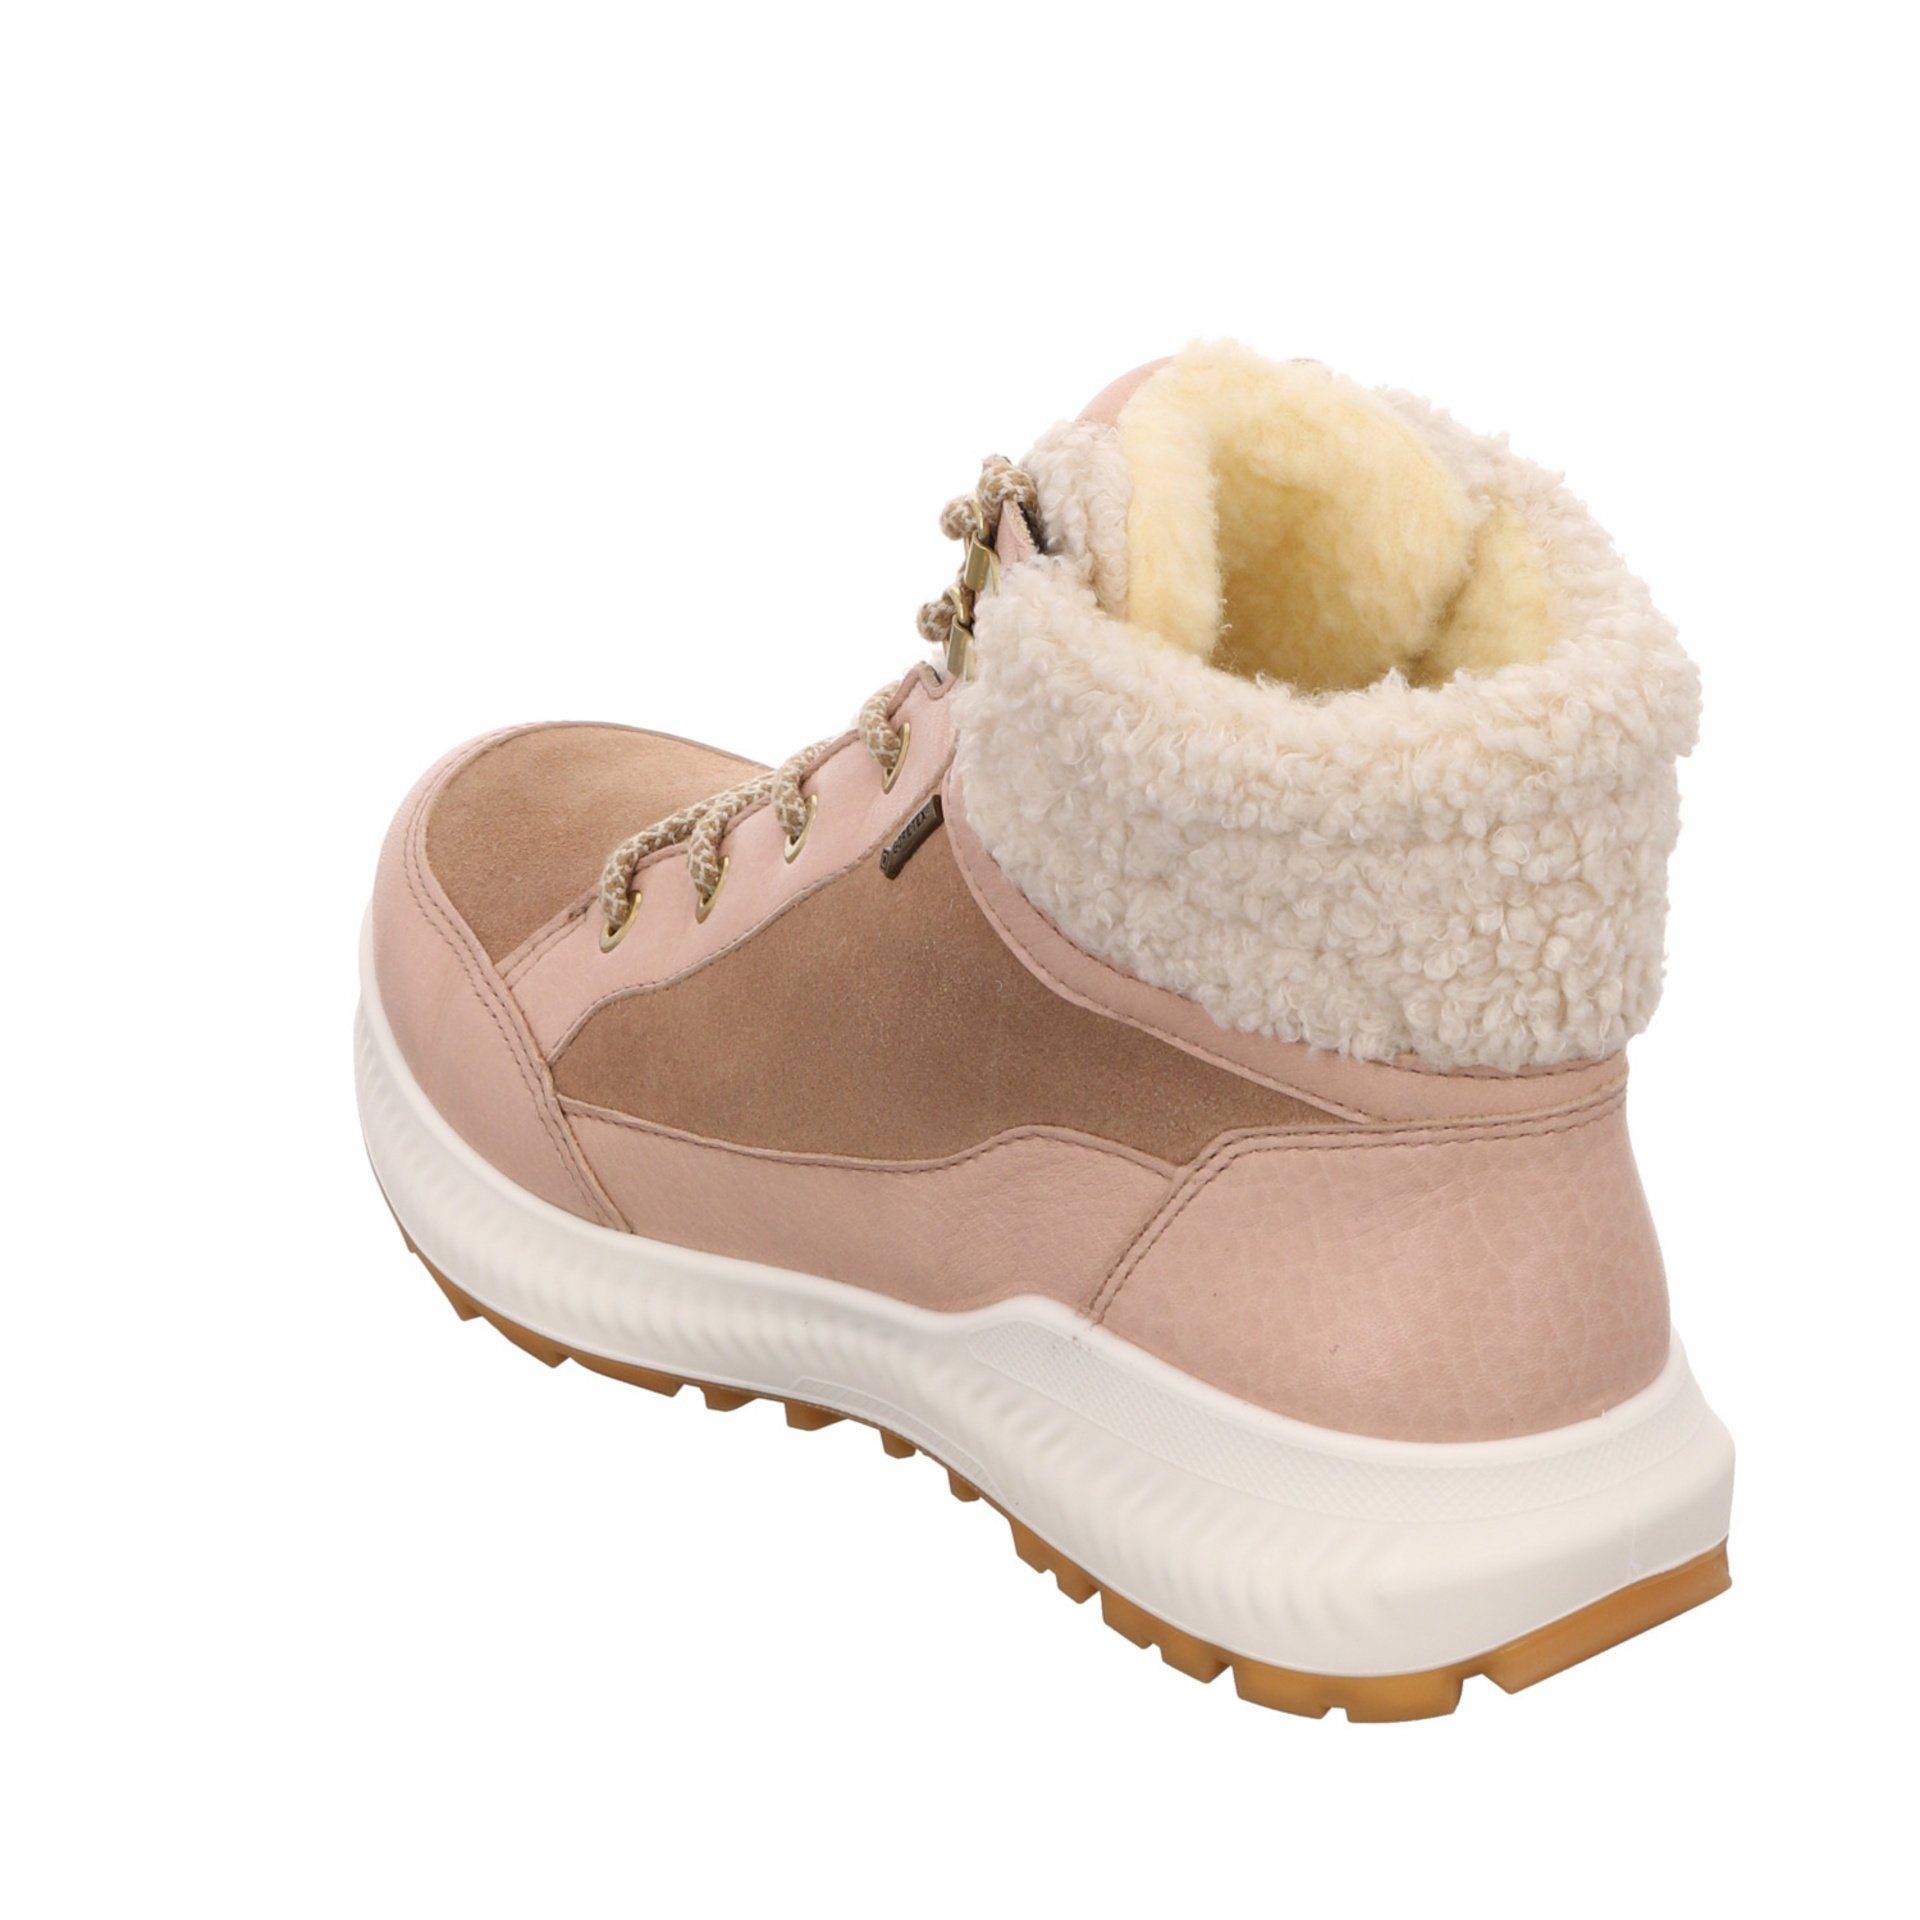 Schuhe Freizeit Leder-/Textilkombination Stiefel Elegant Boots beige 046744 Hiker Ara Stiefelette Damen